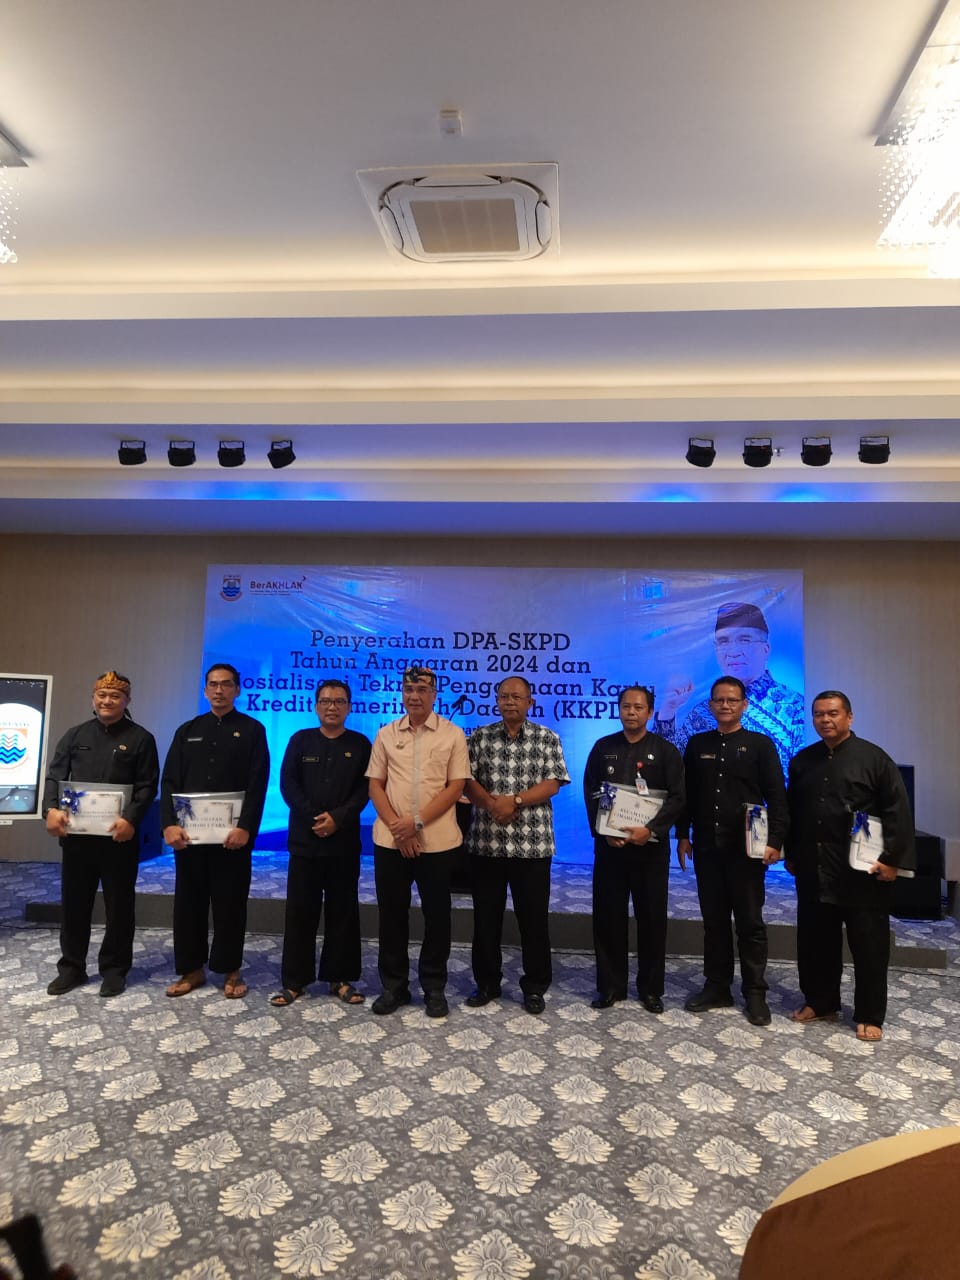 Pemerintah Kota Cimahi telah memberikan penghargaan kepada 5 Satuan Kerja Perangkat Daerah (SKPD) dalam penyerapan anggaran tahun 2023 yang terbaik